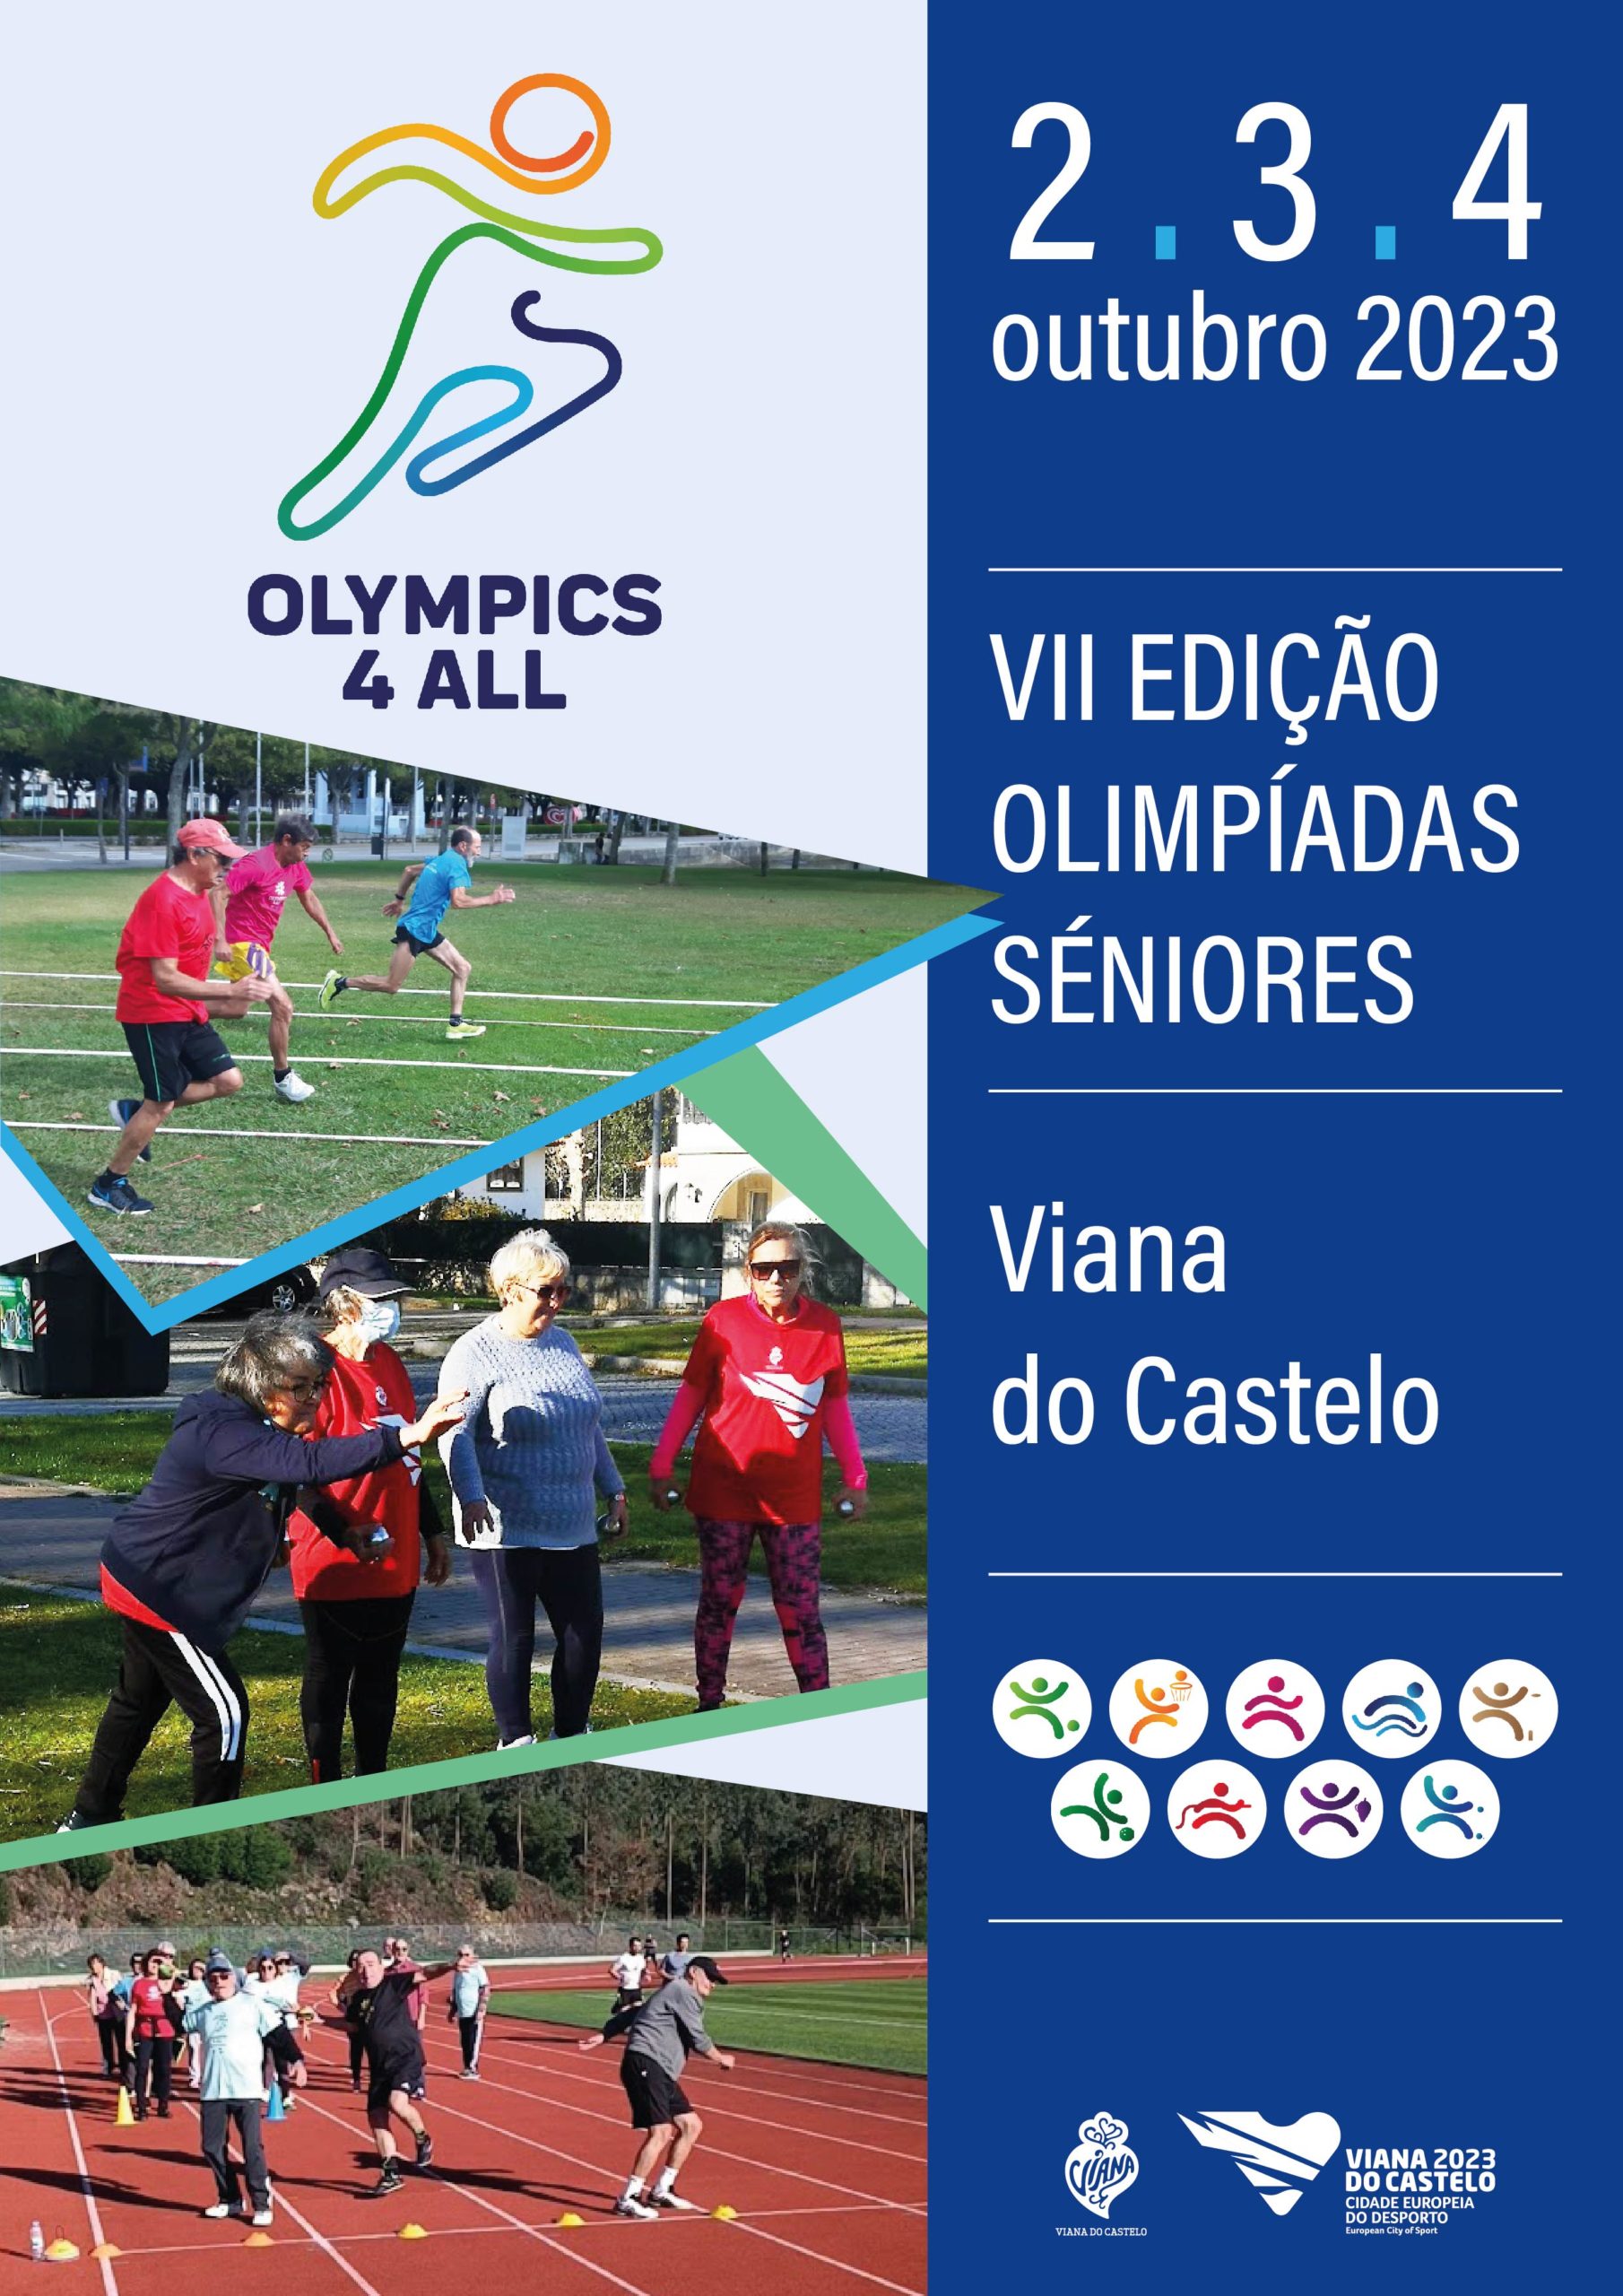 Programa dos Jogos Eurovisionsports 2023 em Viana do Castelo